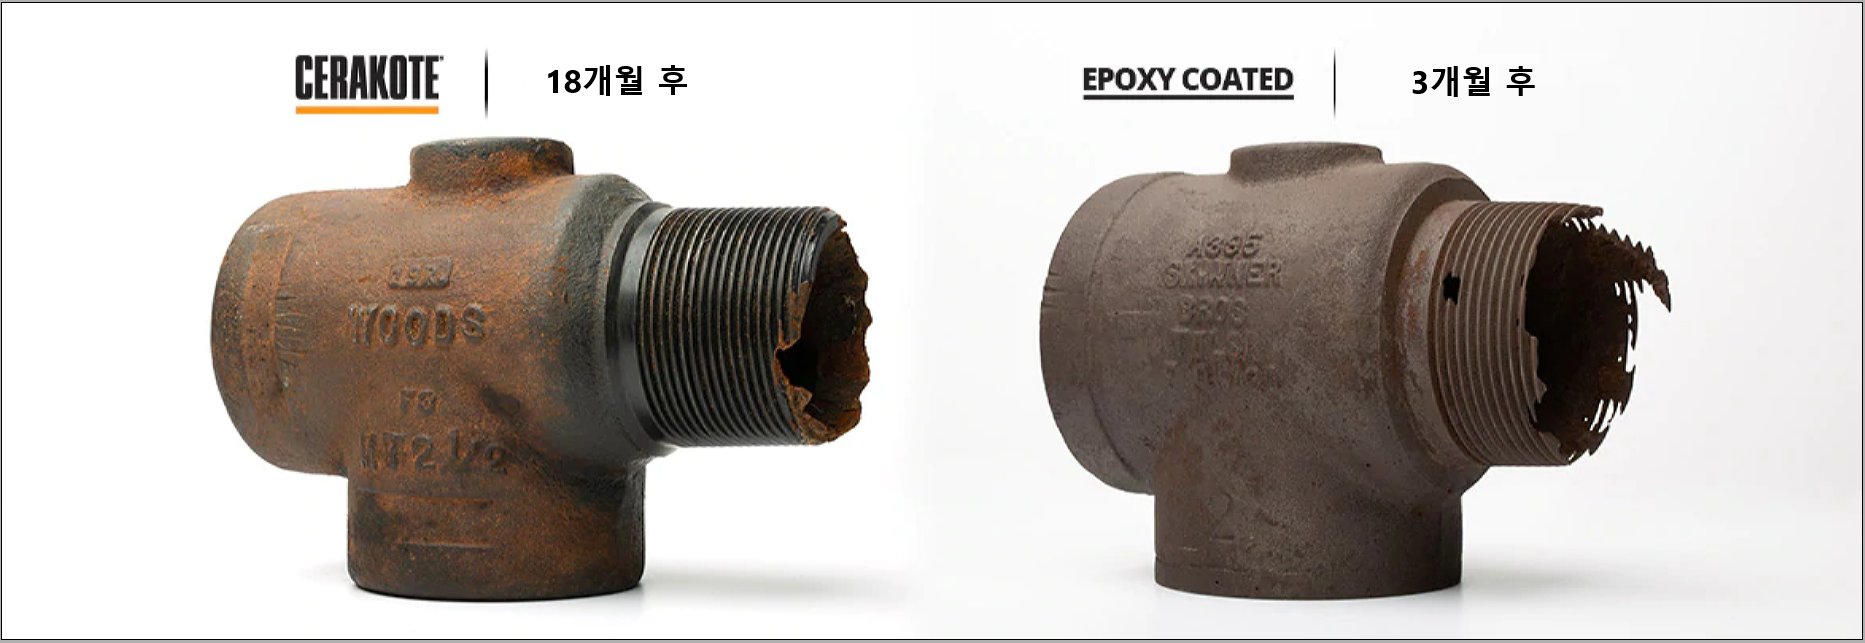 Epoxy vs Cerakote Corrosion Test